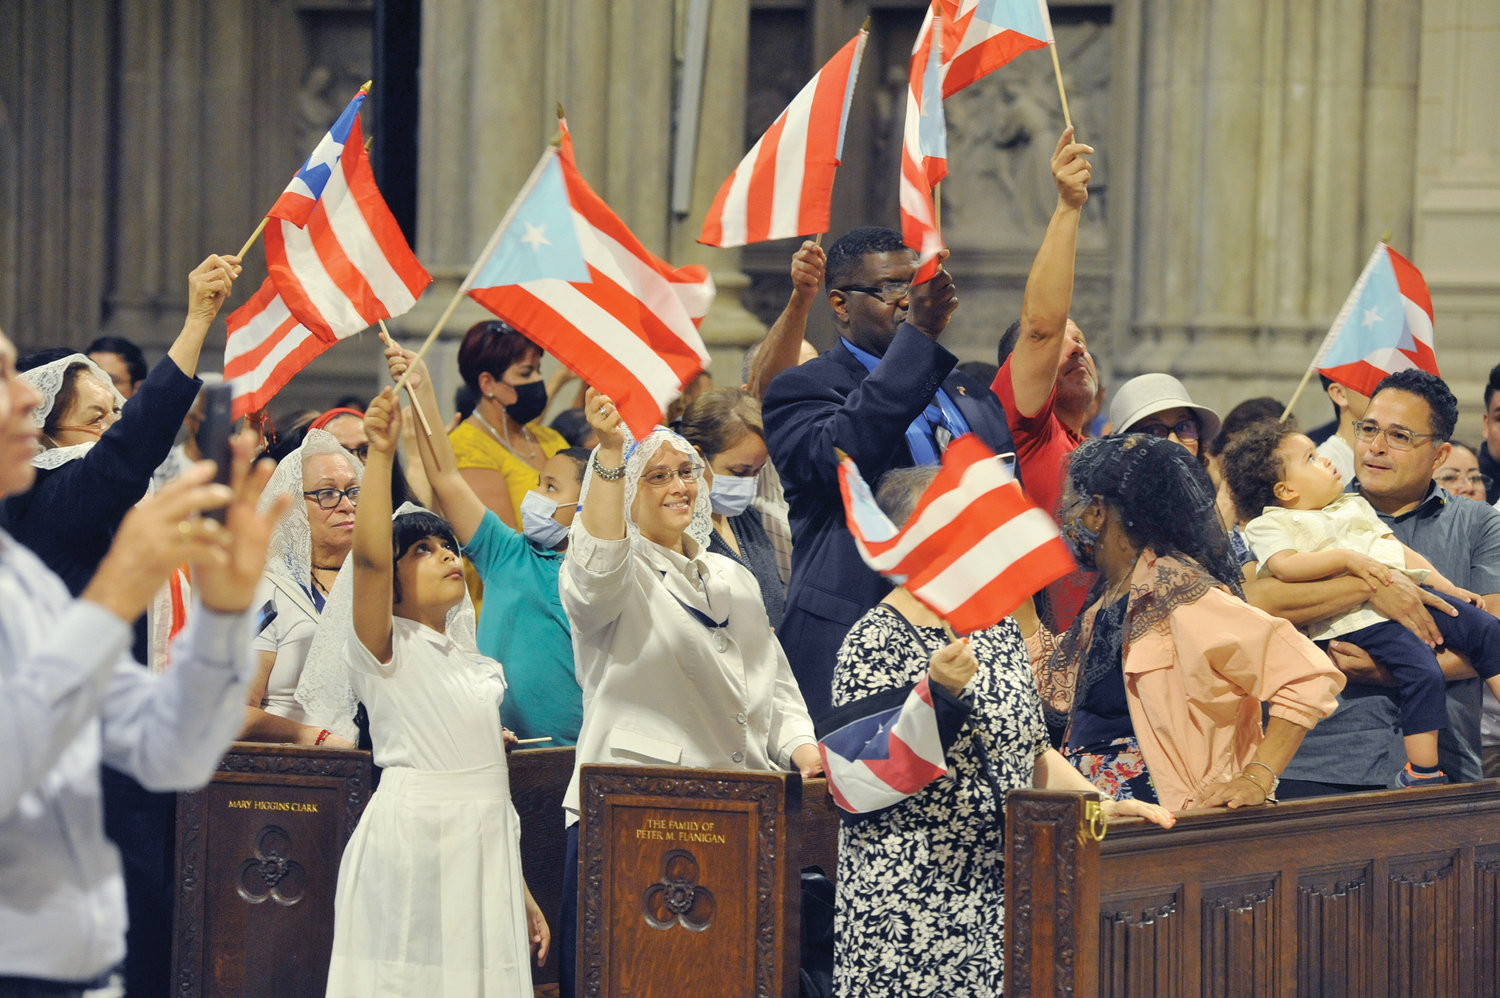 VIVA PUERTO RICO—Banderas ondeando abunda en las bancas delanteras, después de la Misa de la Herencia Cultural Puertorriqueña en la Catedral de San Patricio el 5 de junio.